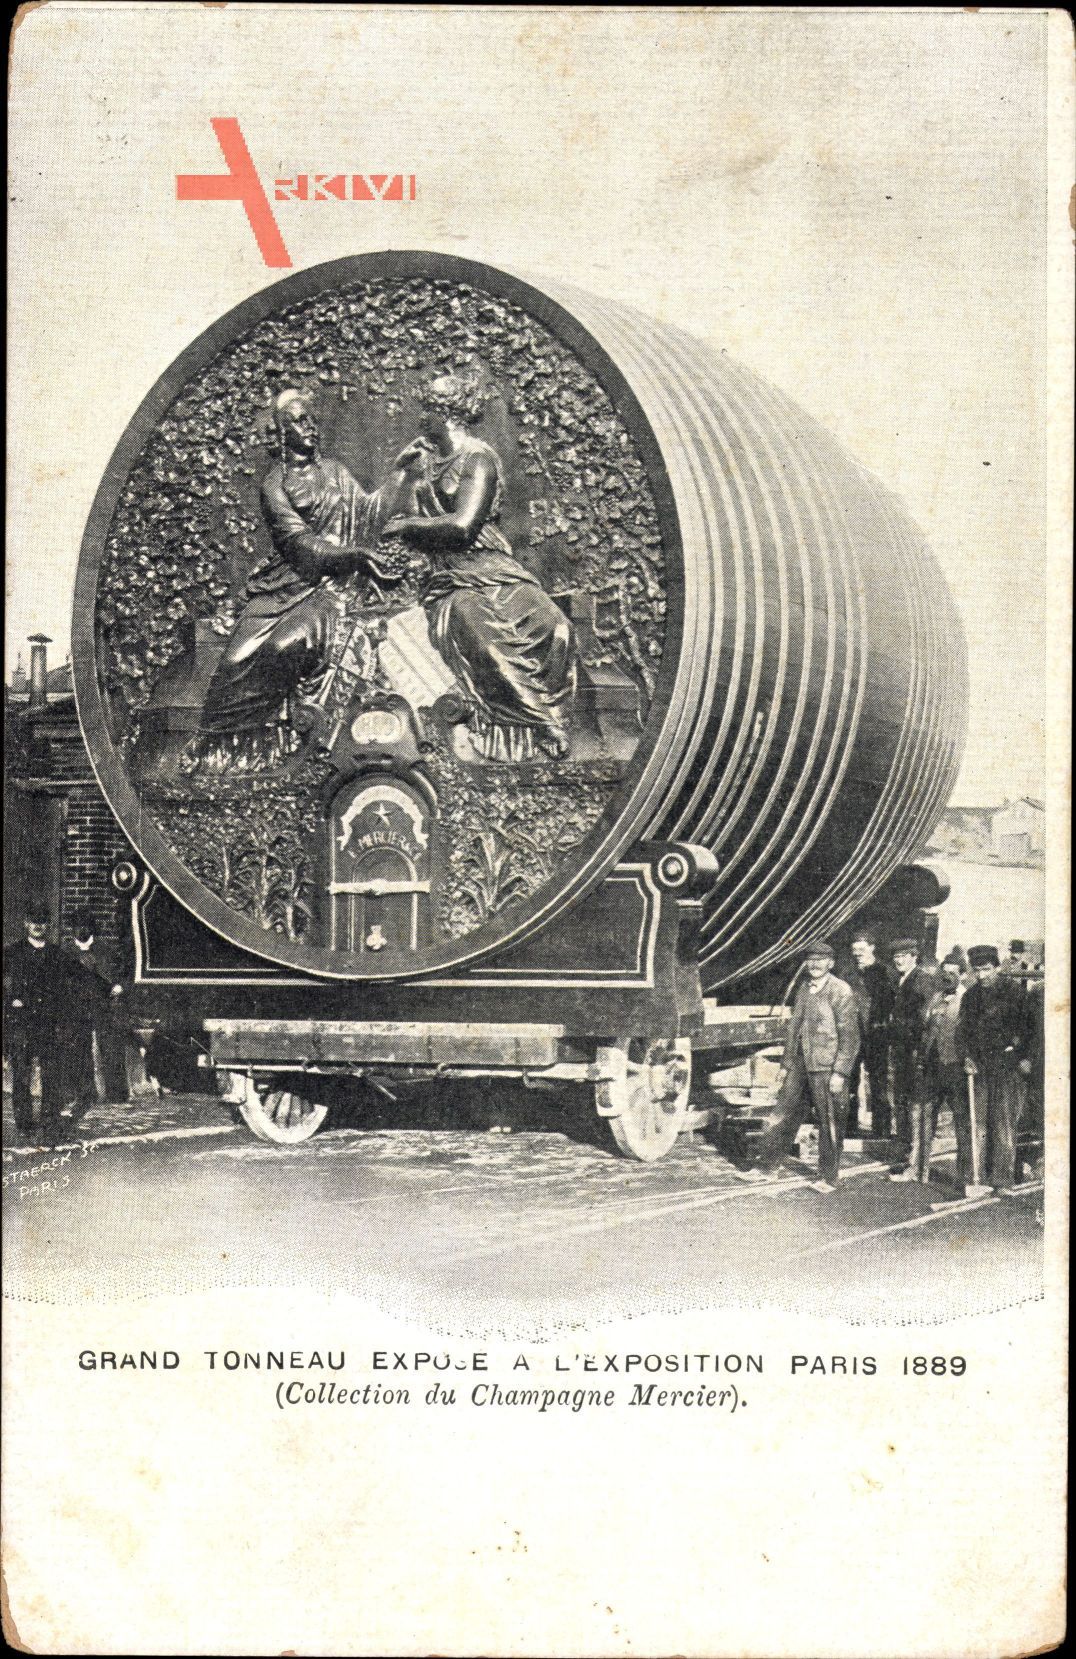 Paris, Exposition 1889, Grand Tonneau, Großes Weinfass